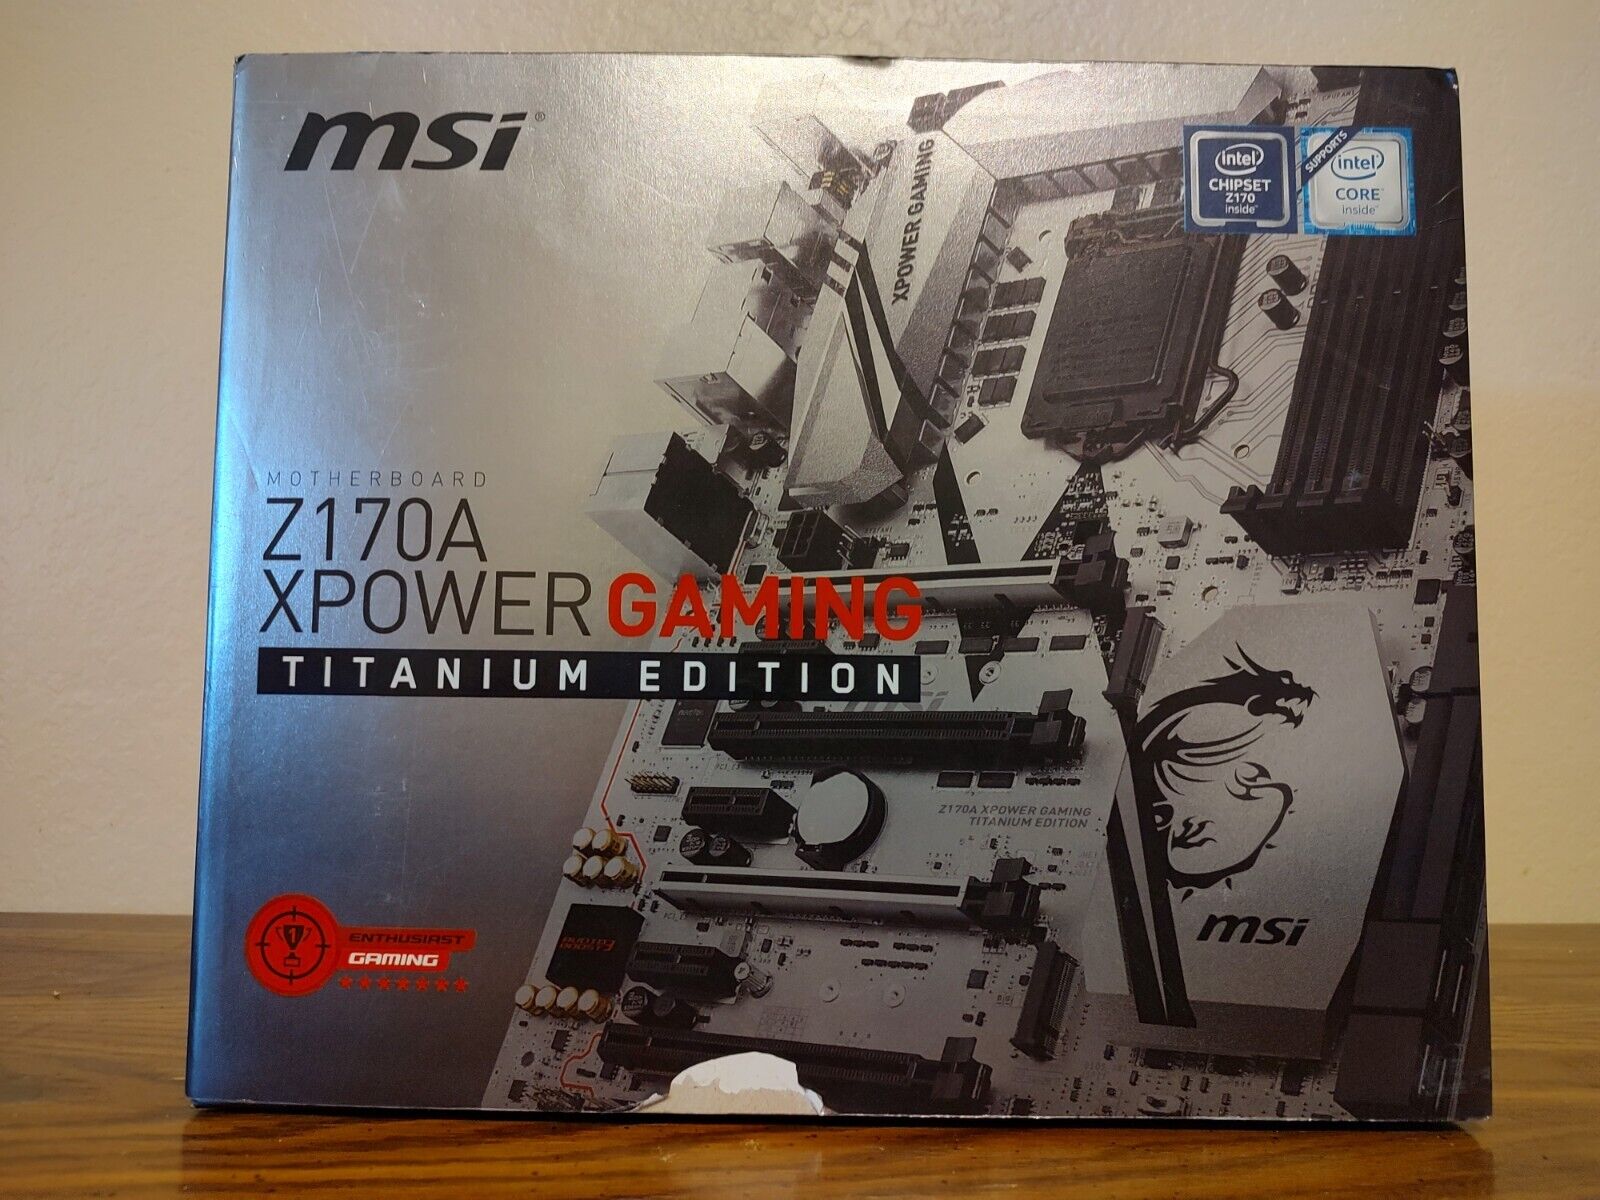 MSi Z170A XPOWER GAMING TITANIUM EDITION LGA 1151 ATX Gaming Motherboard